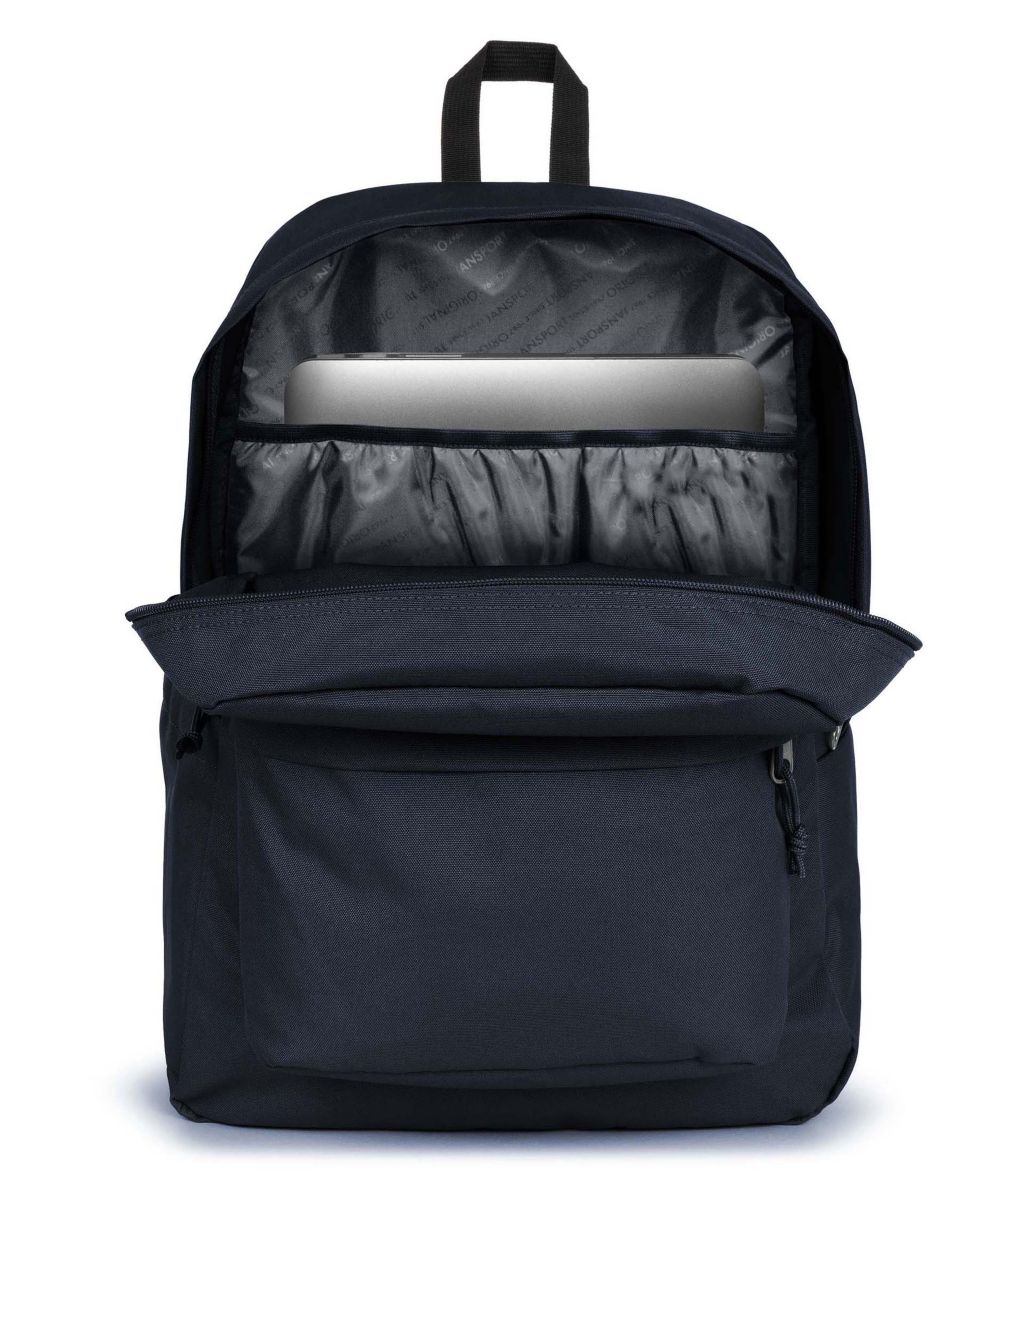 SuperBreak Plus Backpack 2 of 5